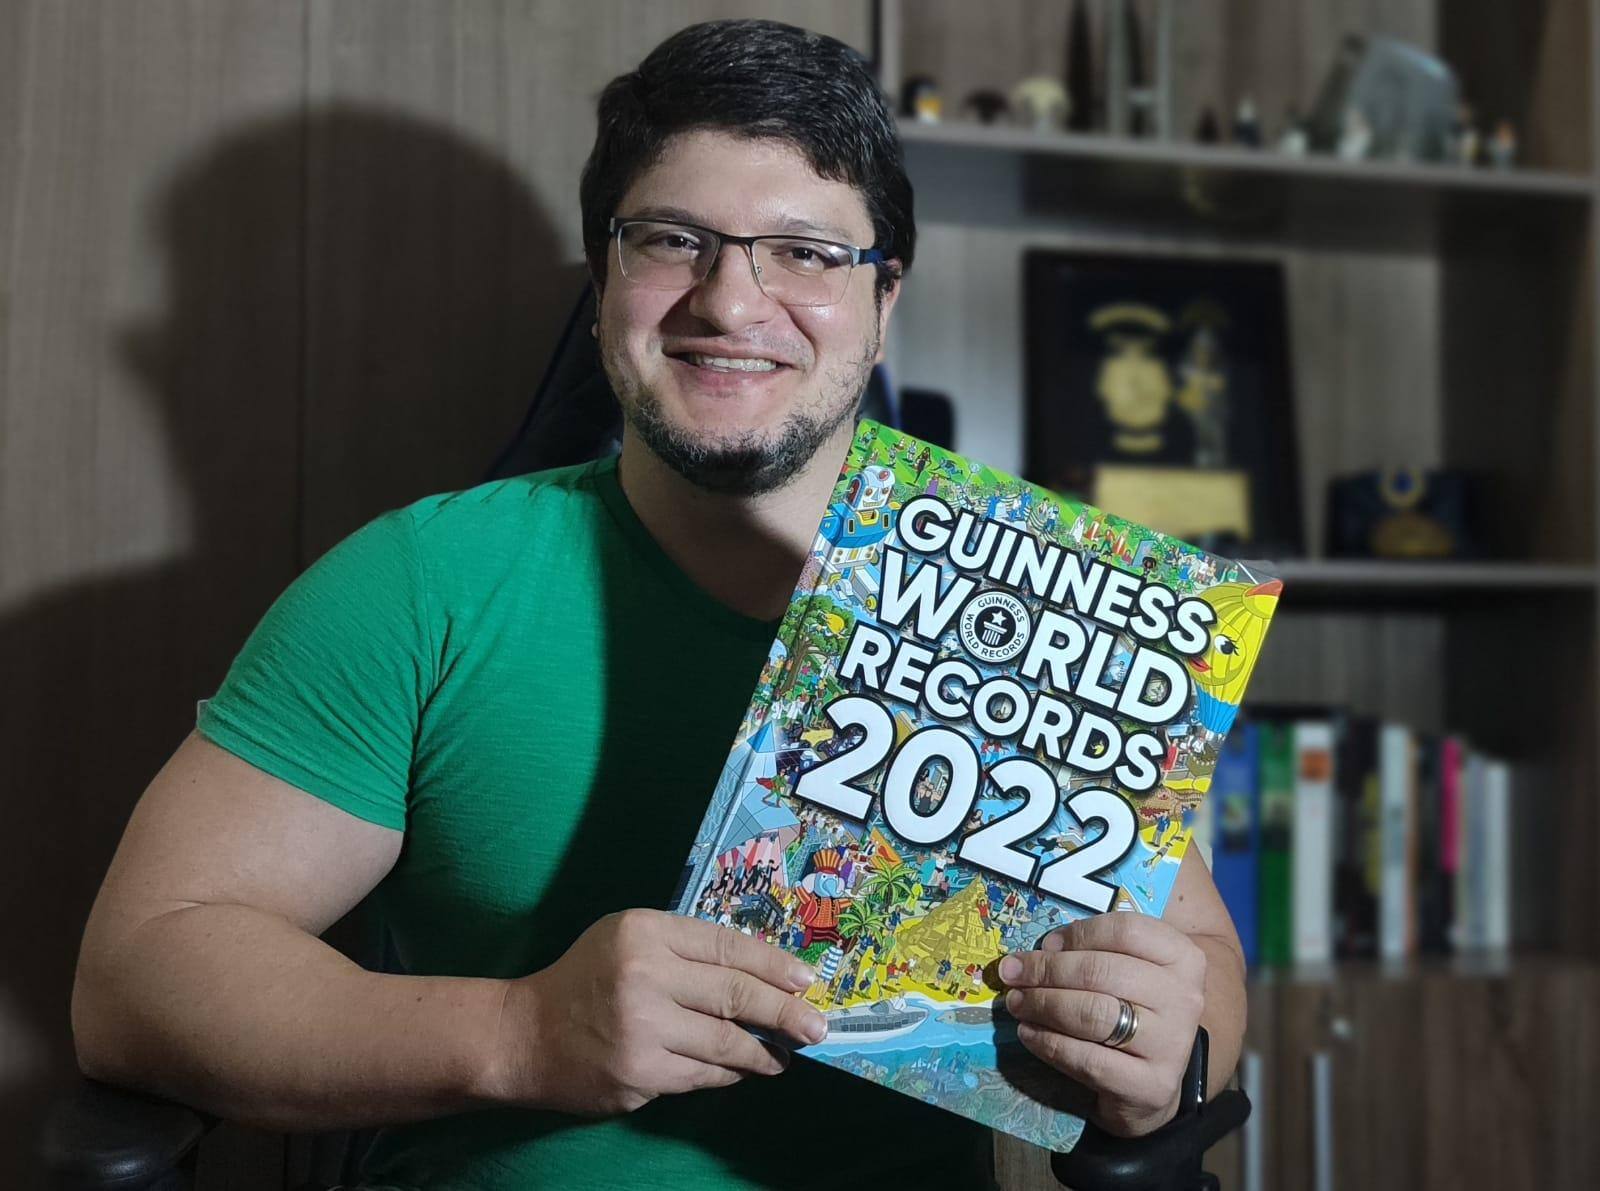 Cícero exibe com orgulho o livro dos recordes 2022, onde seu trabalho está impresso